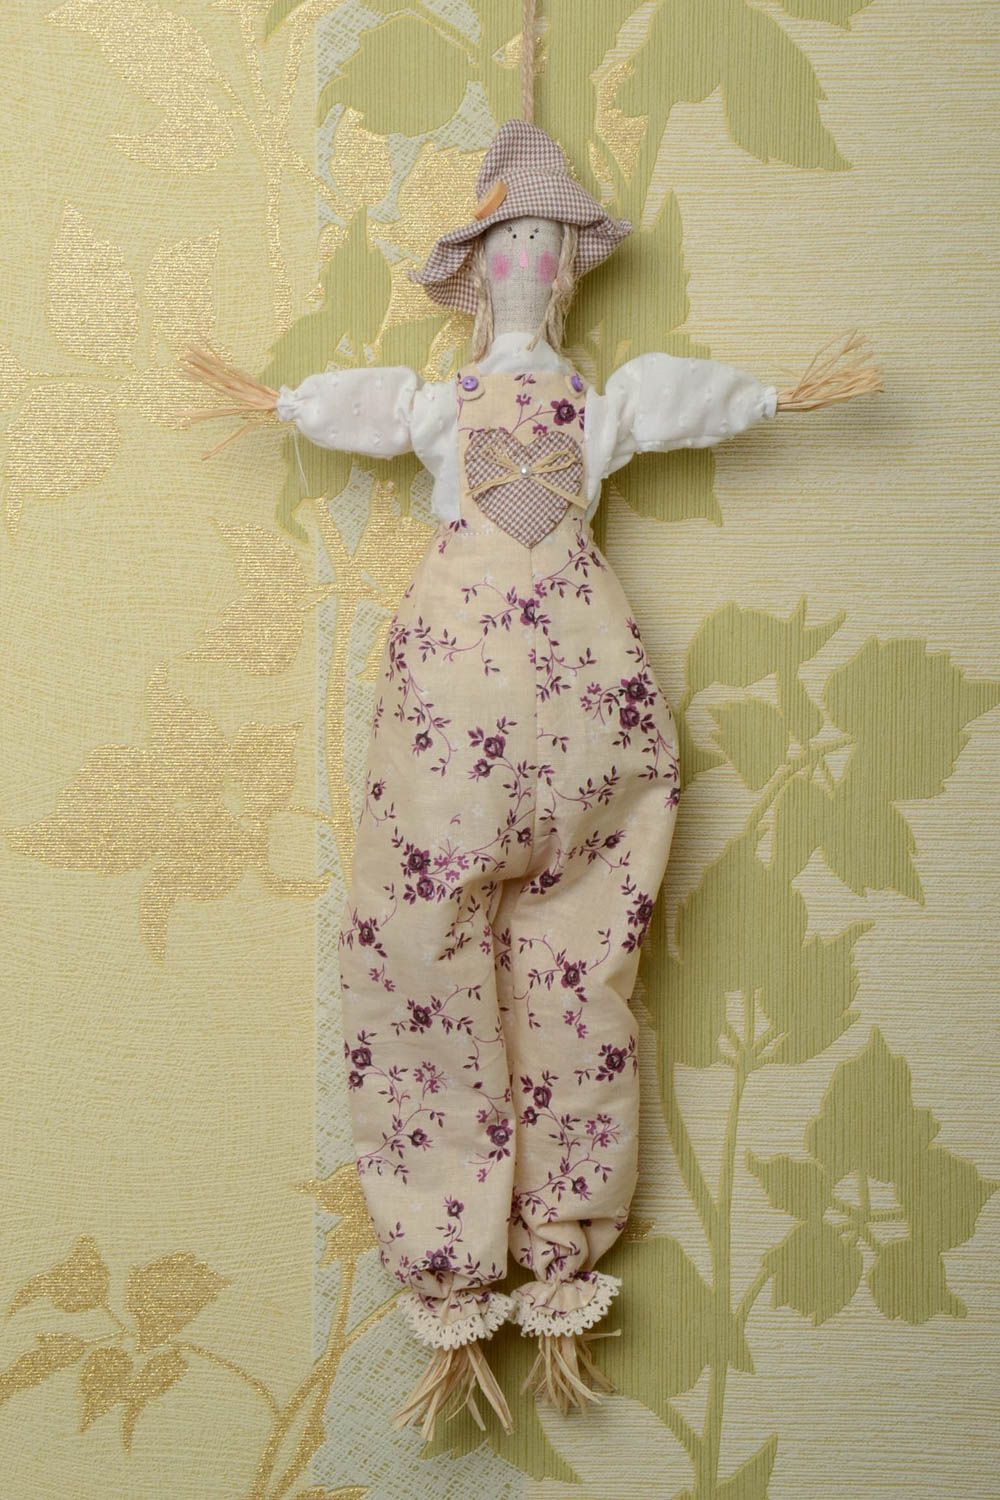 Мягкая игрушка с петелькой подвеска кукла из ситца и хлопка Пугало хенд мэйд фото 1